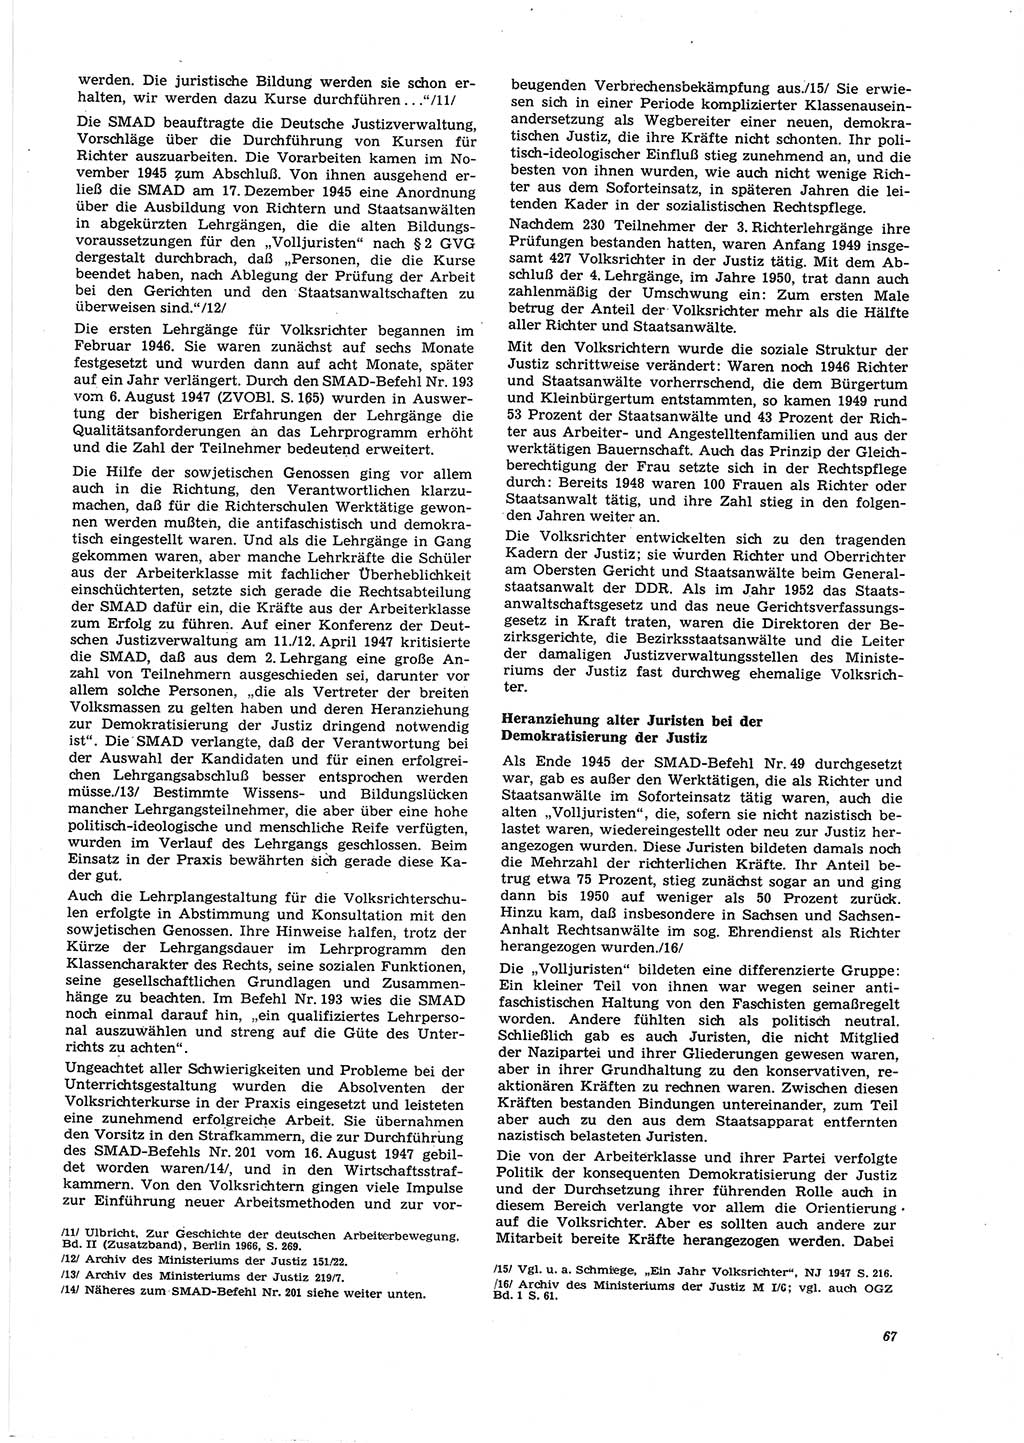 Neue Justiz (NJ), Zeitschrift für Recht und Rechtswissenschaft [Deutsche Demokratische Republik (DDR)], 27. Jahrgang 1973, Seite 67 (NJ DDR 1973, S. 67)